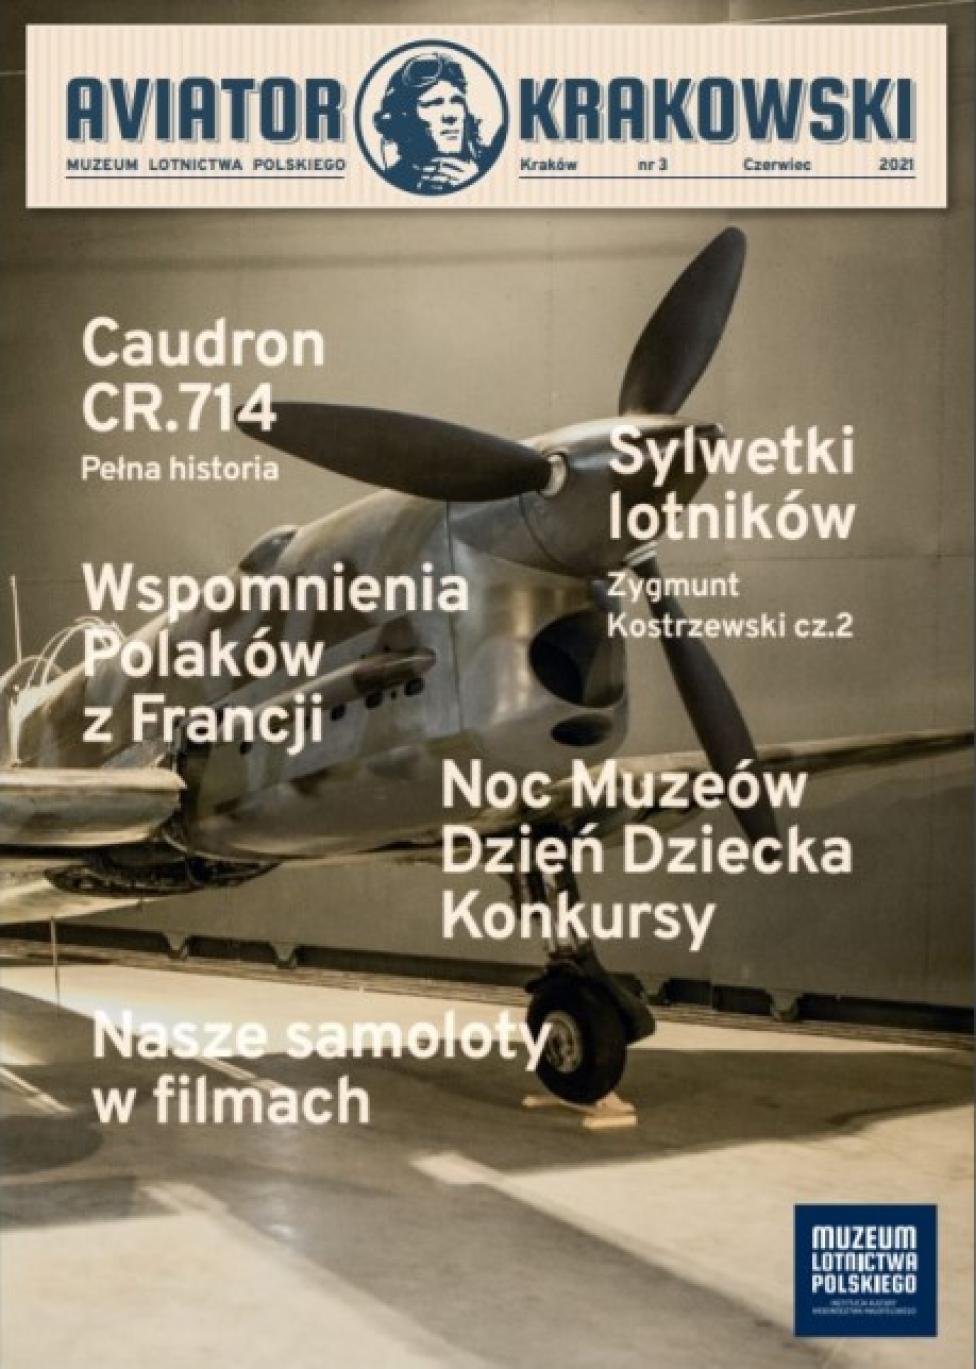 Aviator Krakowski Nr 3